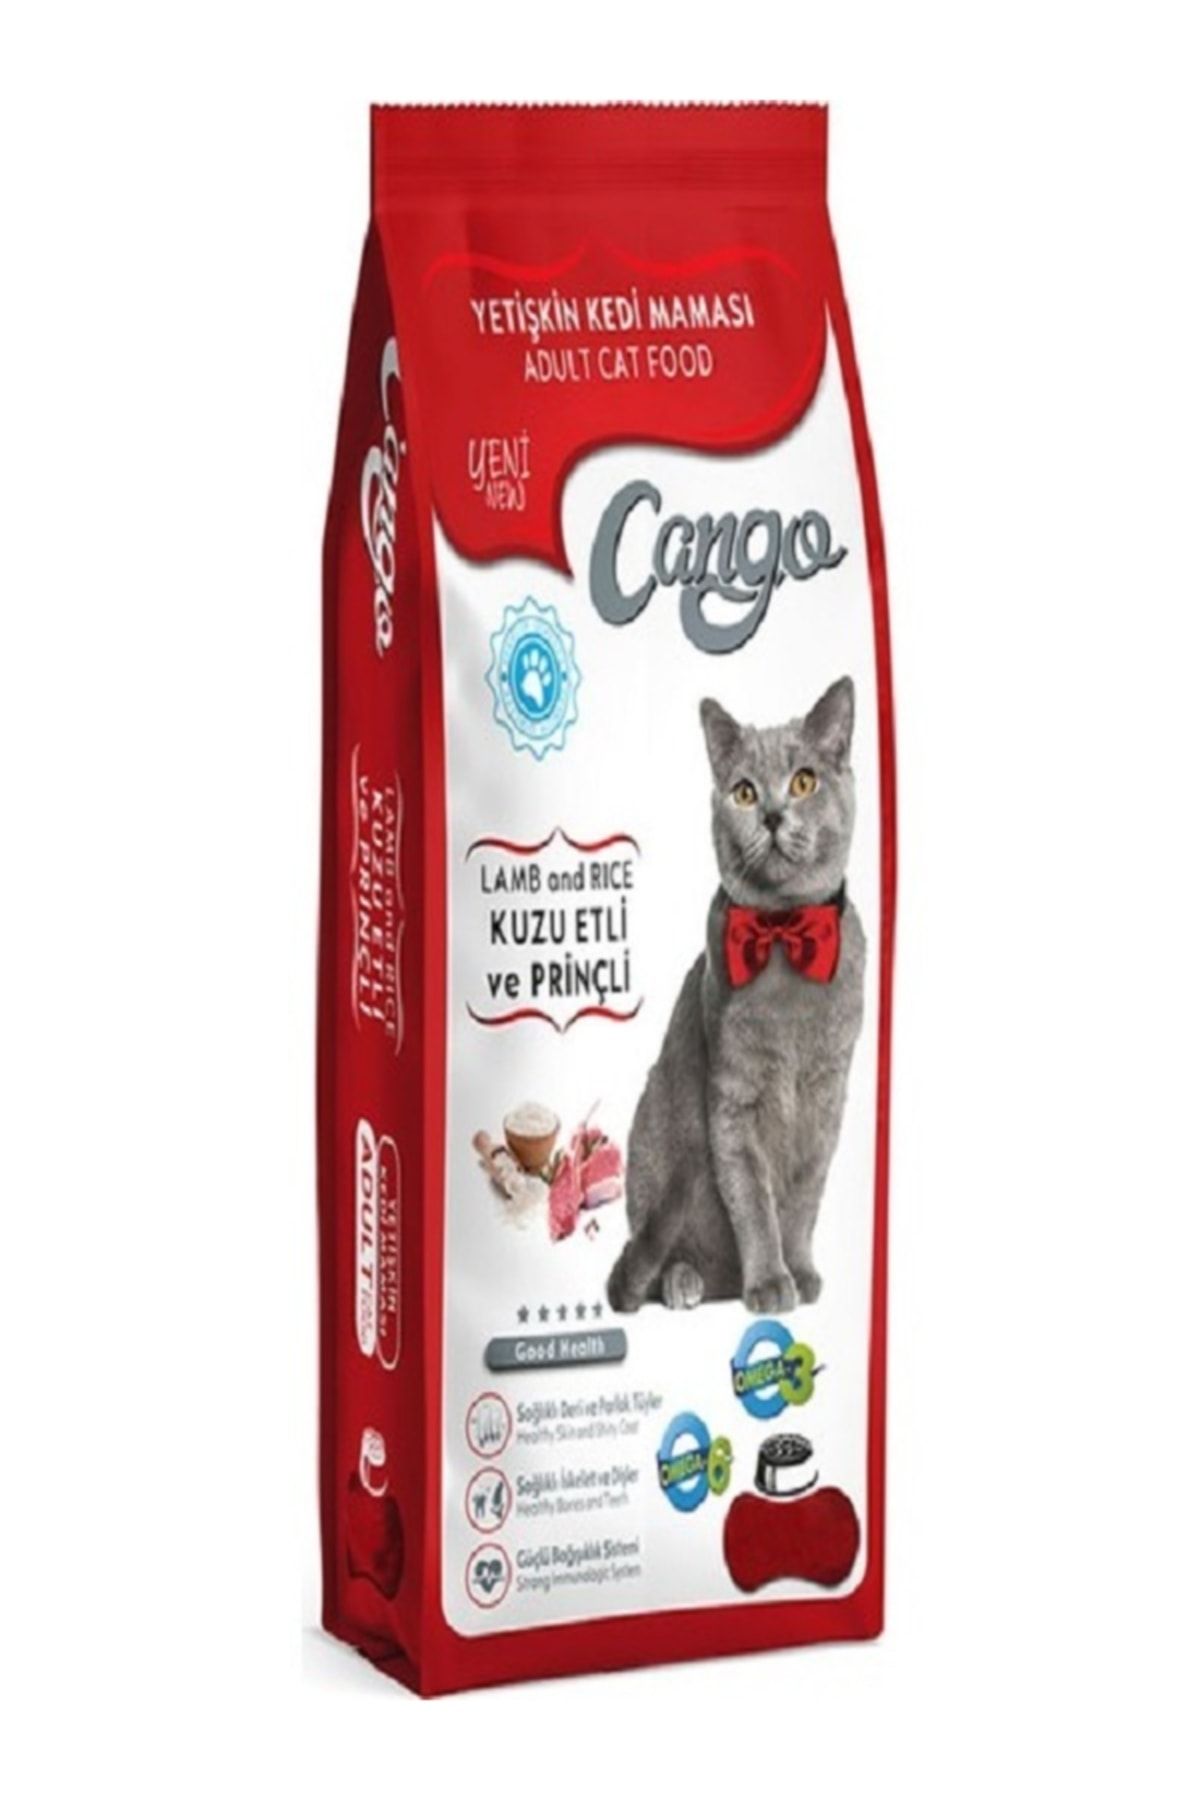 Cango Yetişkin Kedi Maması Kuzu Etli 15 Kg Fiyatı, Yorumları TRENDYOL